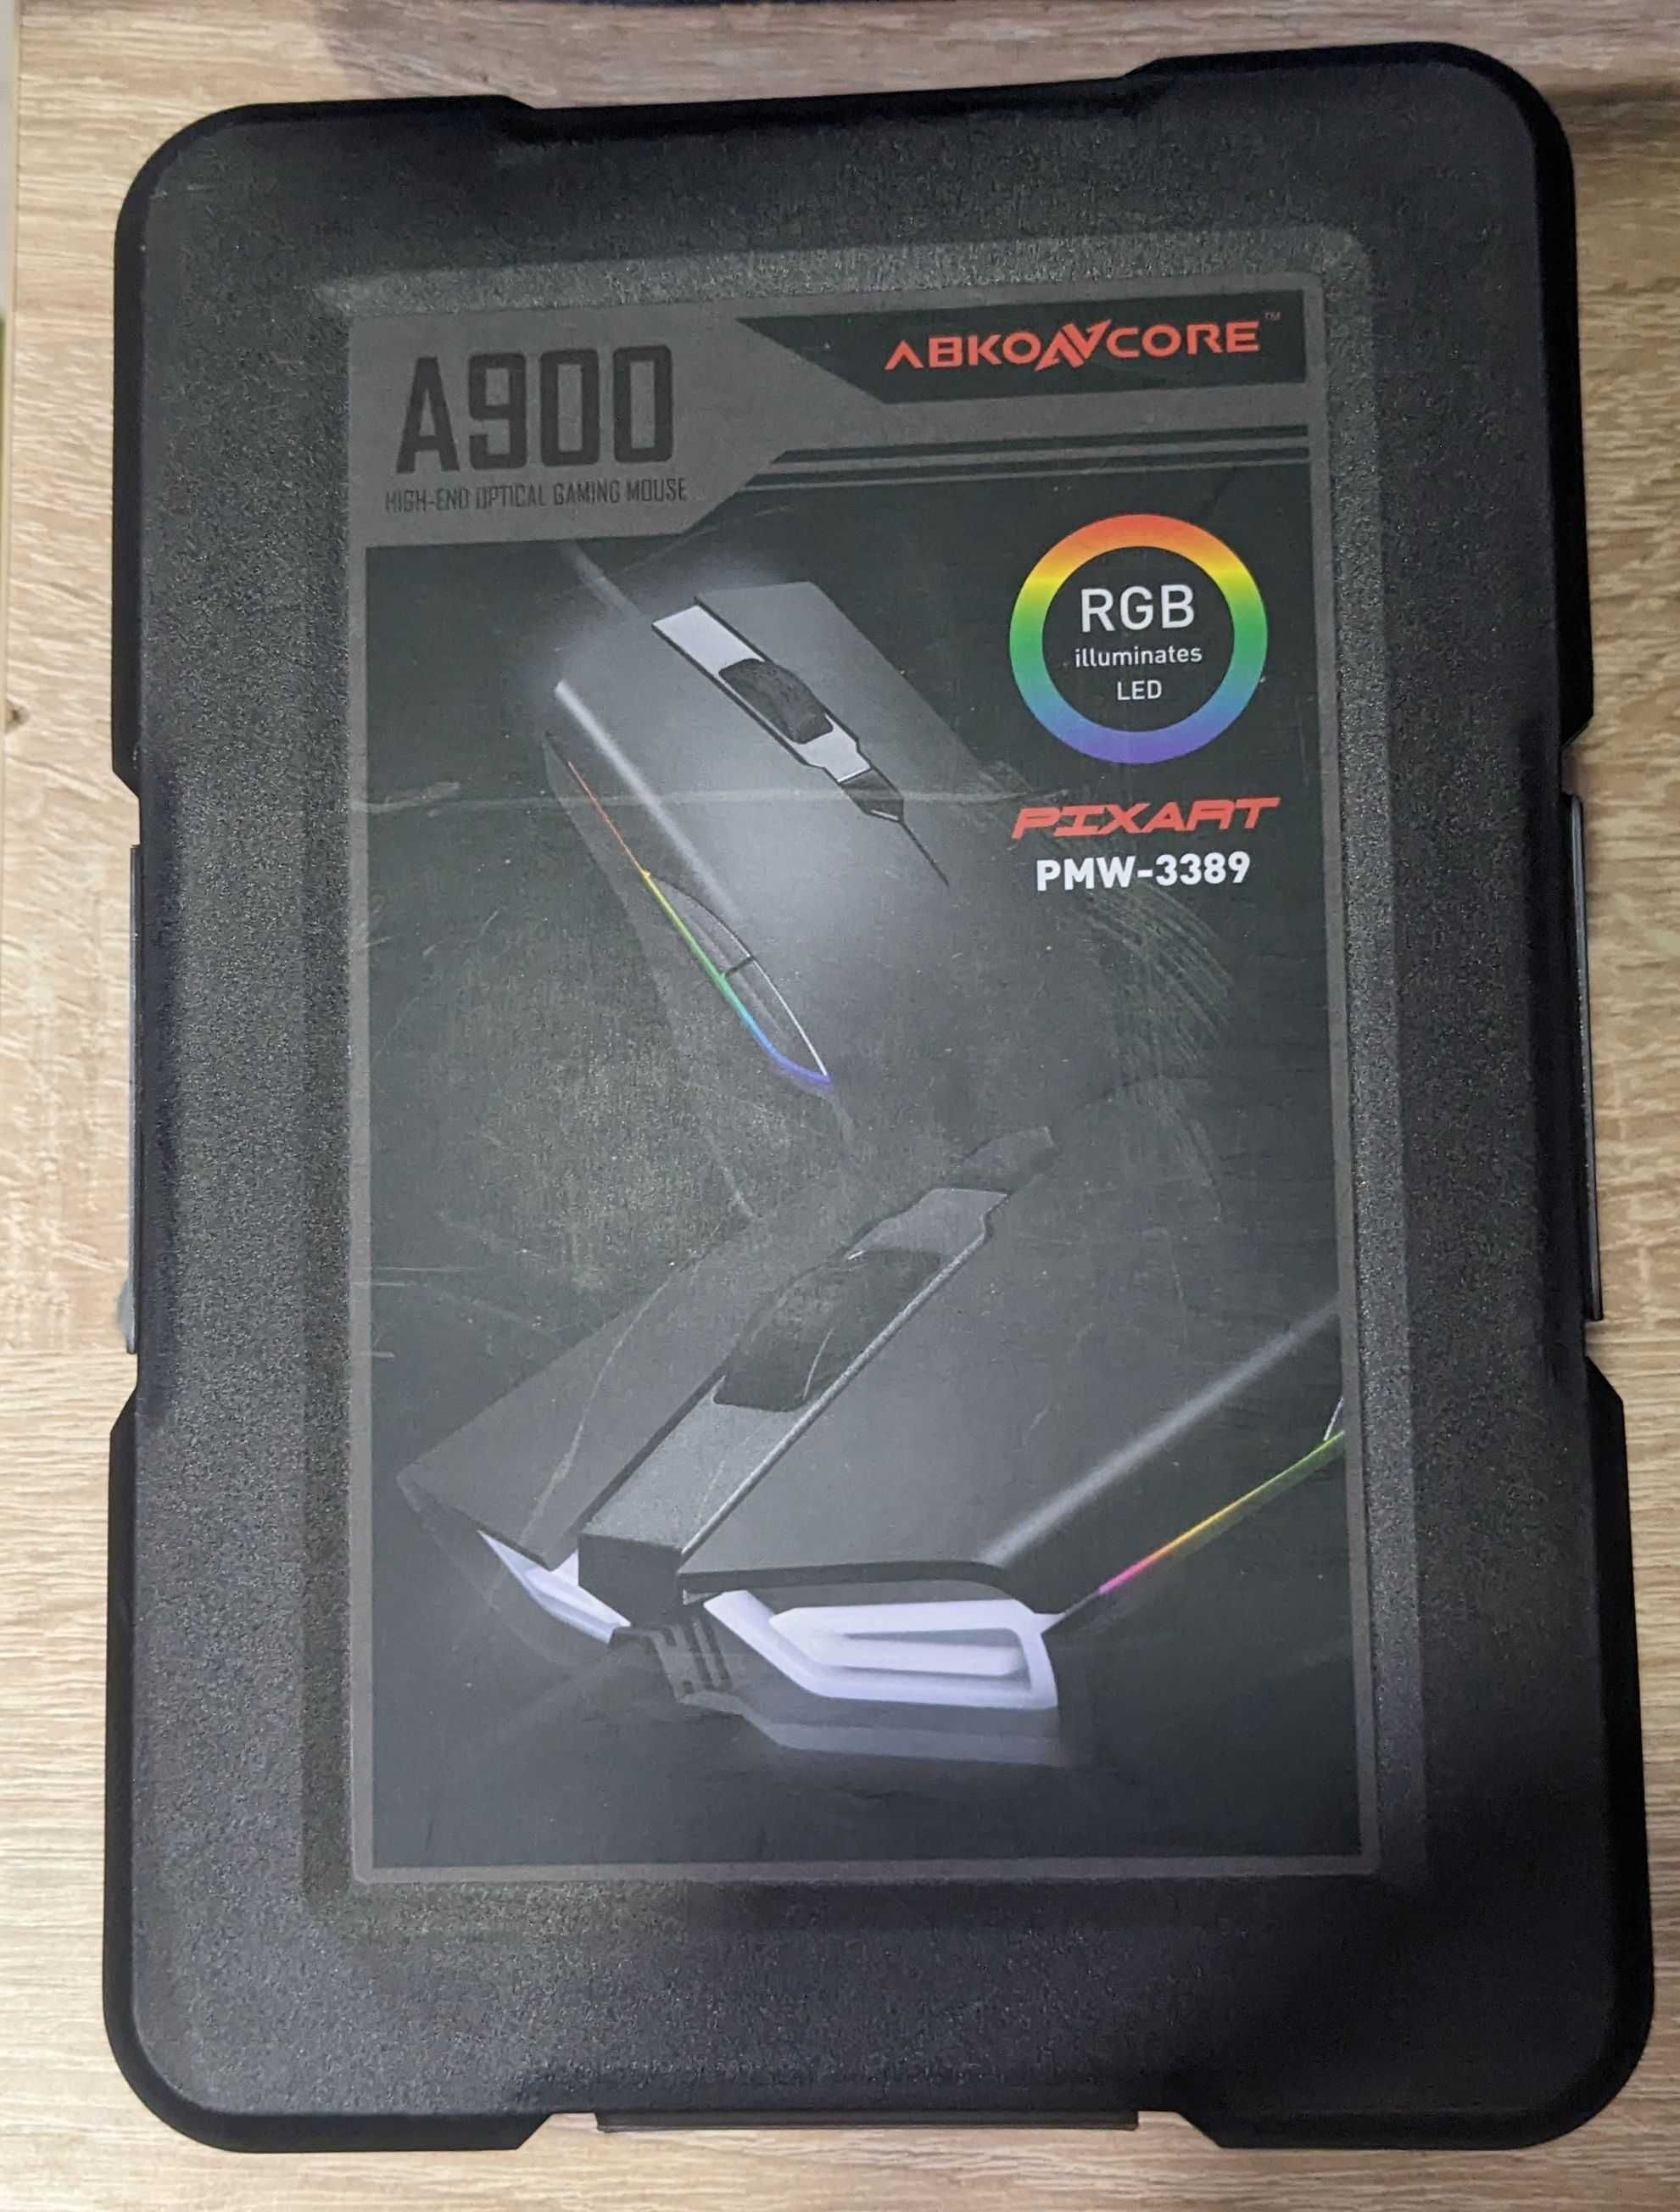 Игровая мышь Abkoncore A900 на сенсоре PixArt 3389